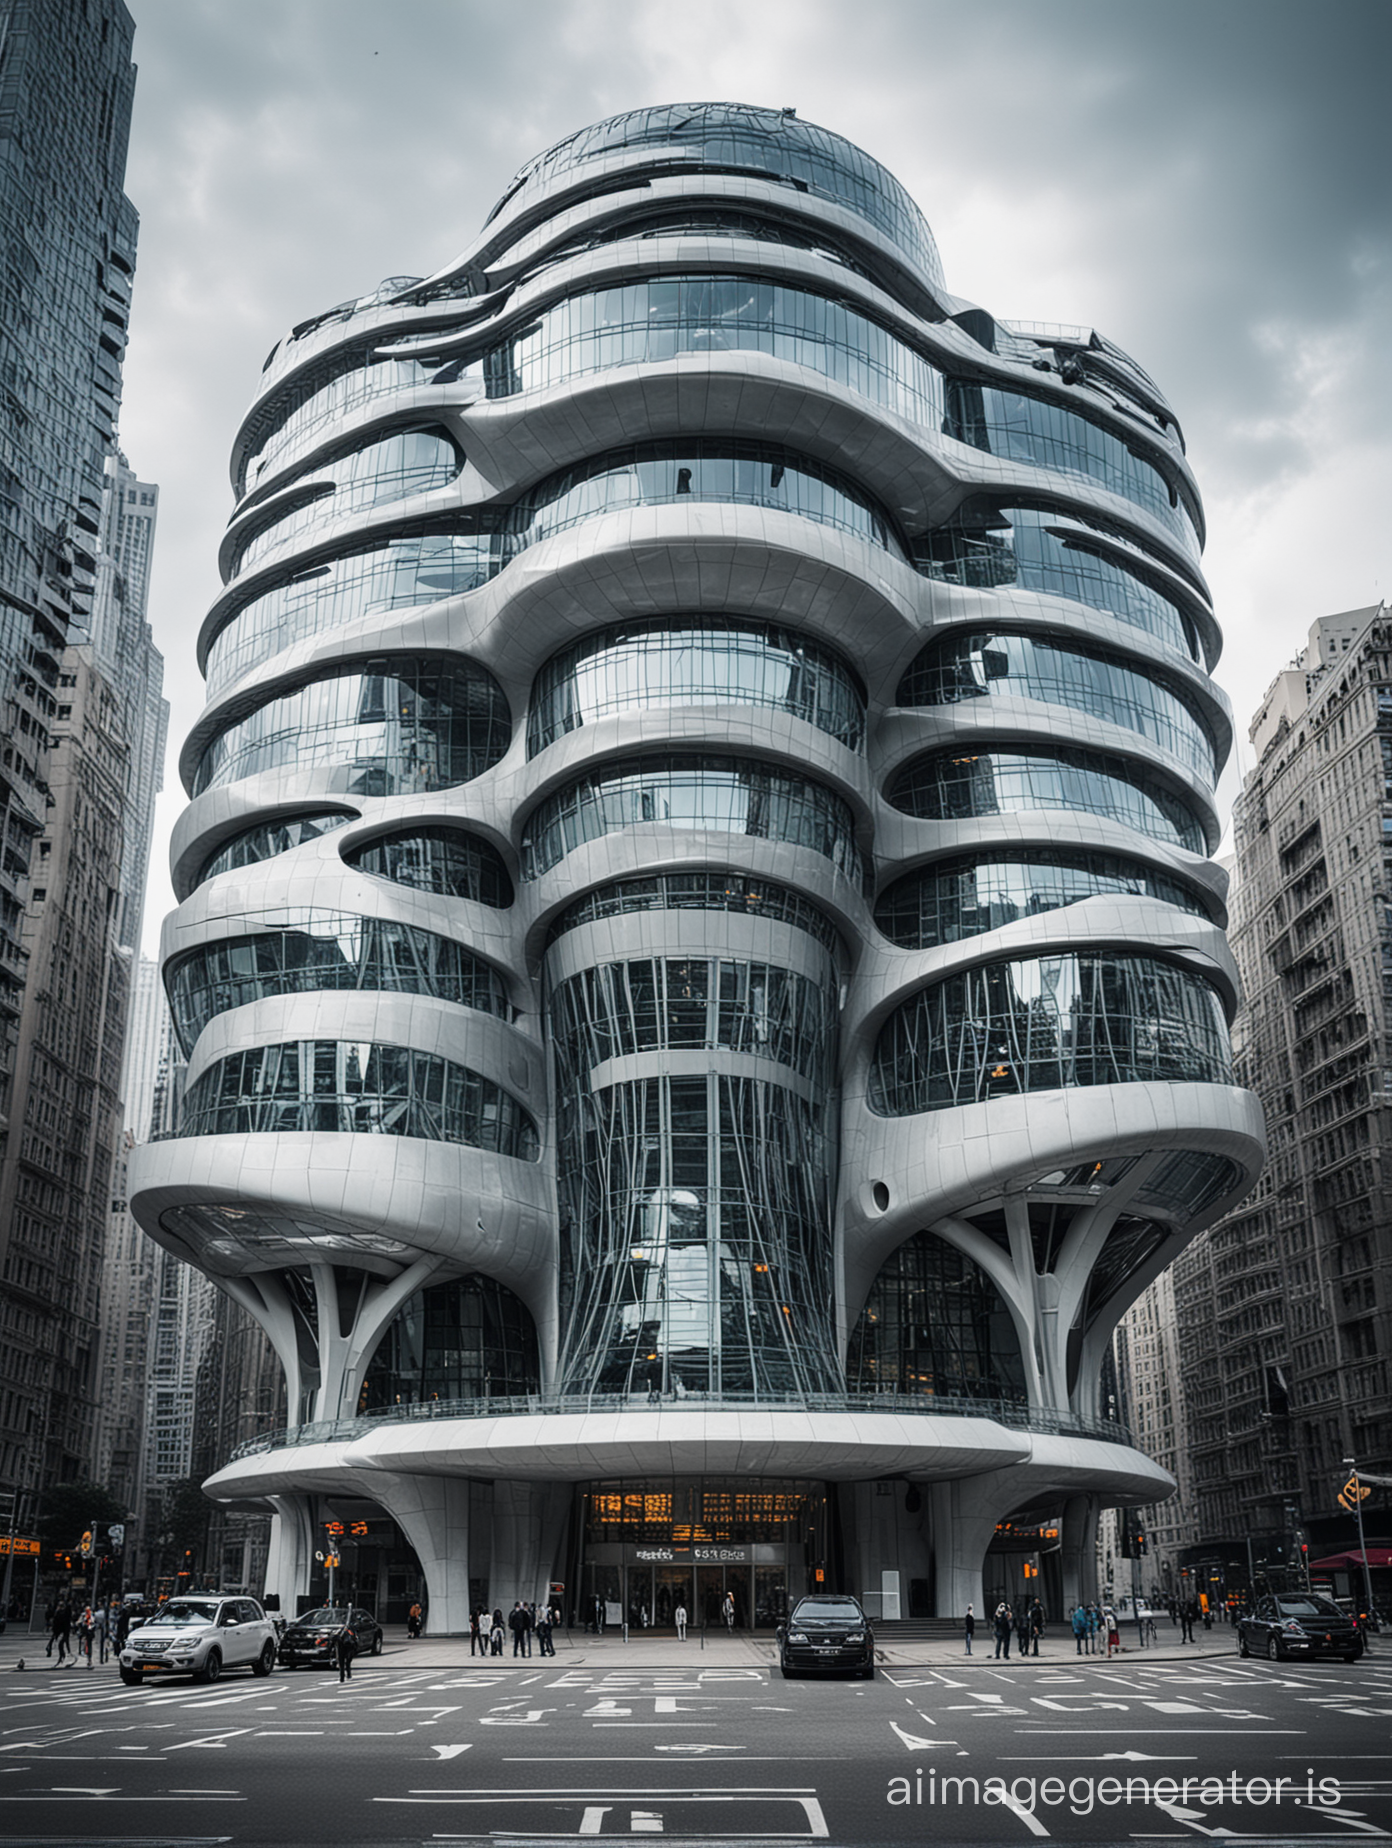 A very futuristic building in big city 